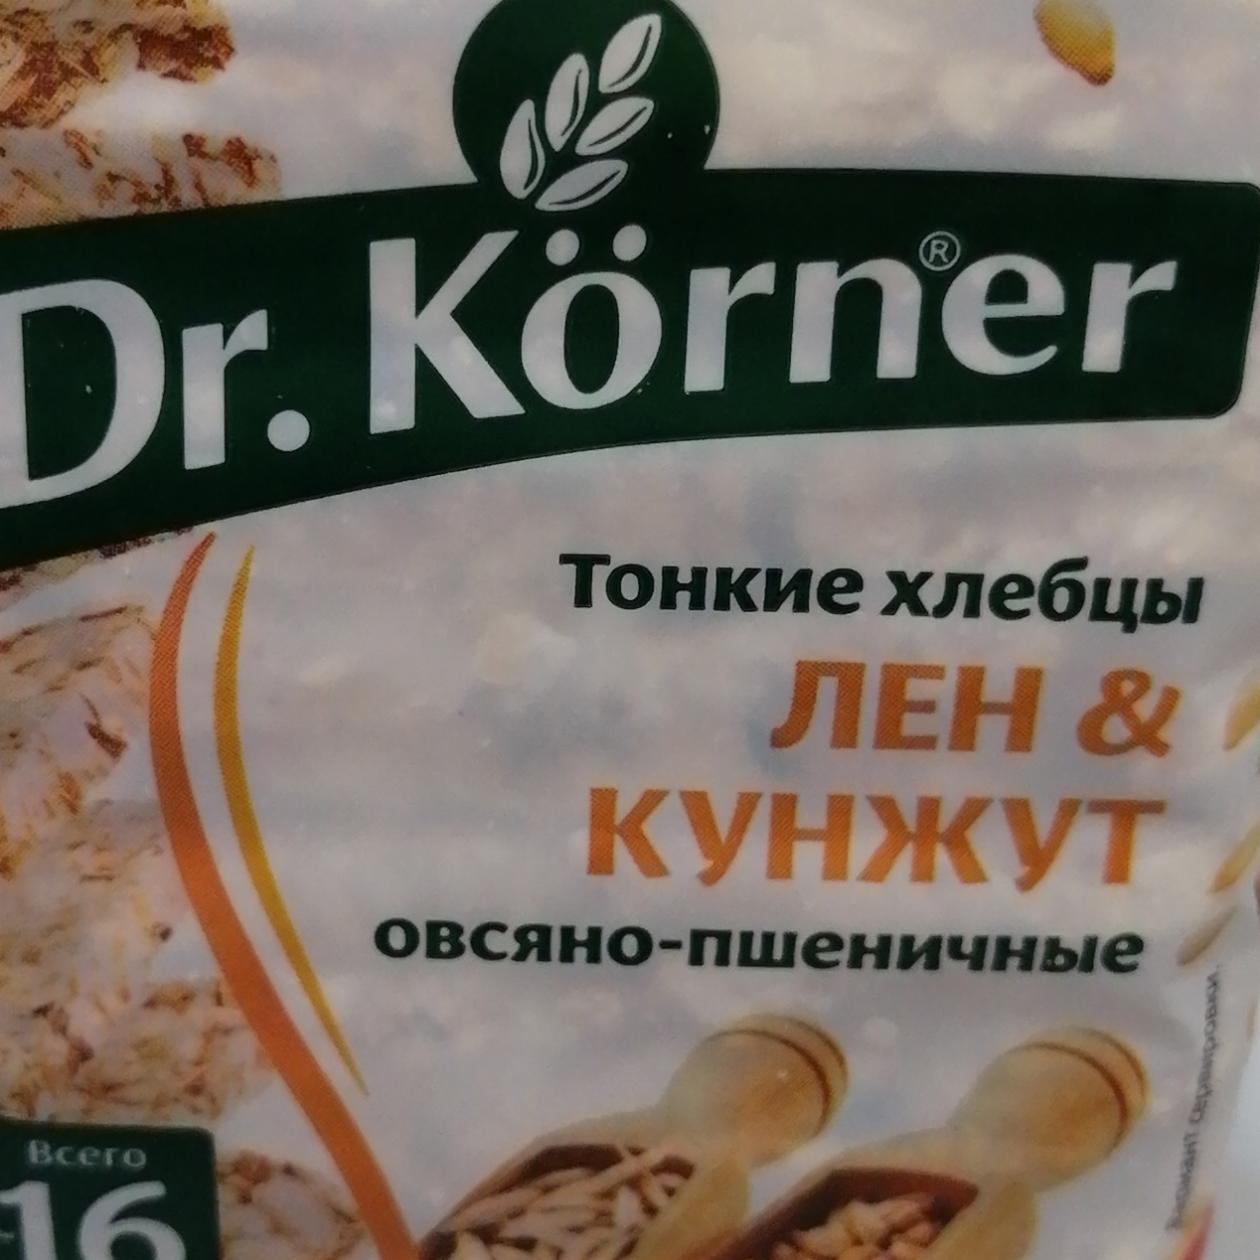 Фото - Хлебцы Лен и кунжут овсяной - пшеничные Dr.Korner